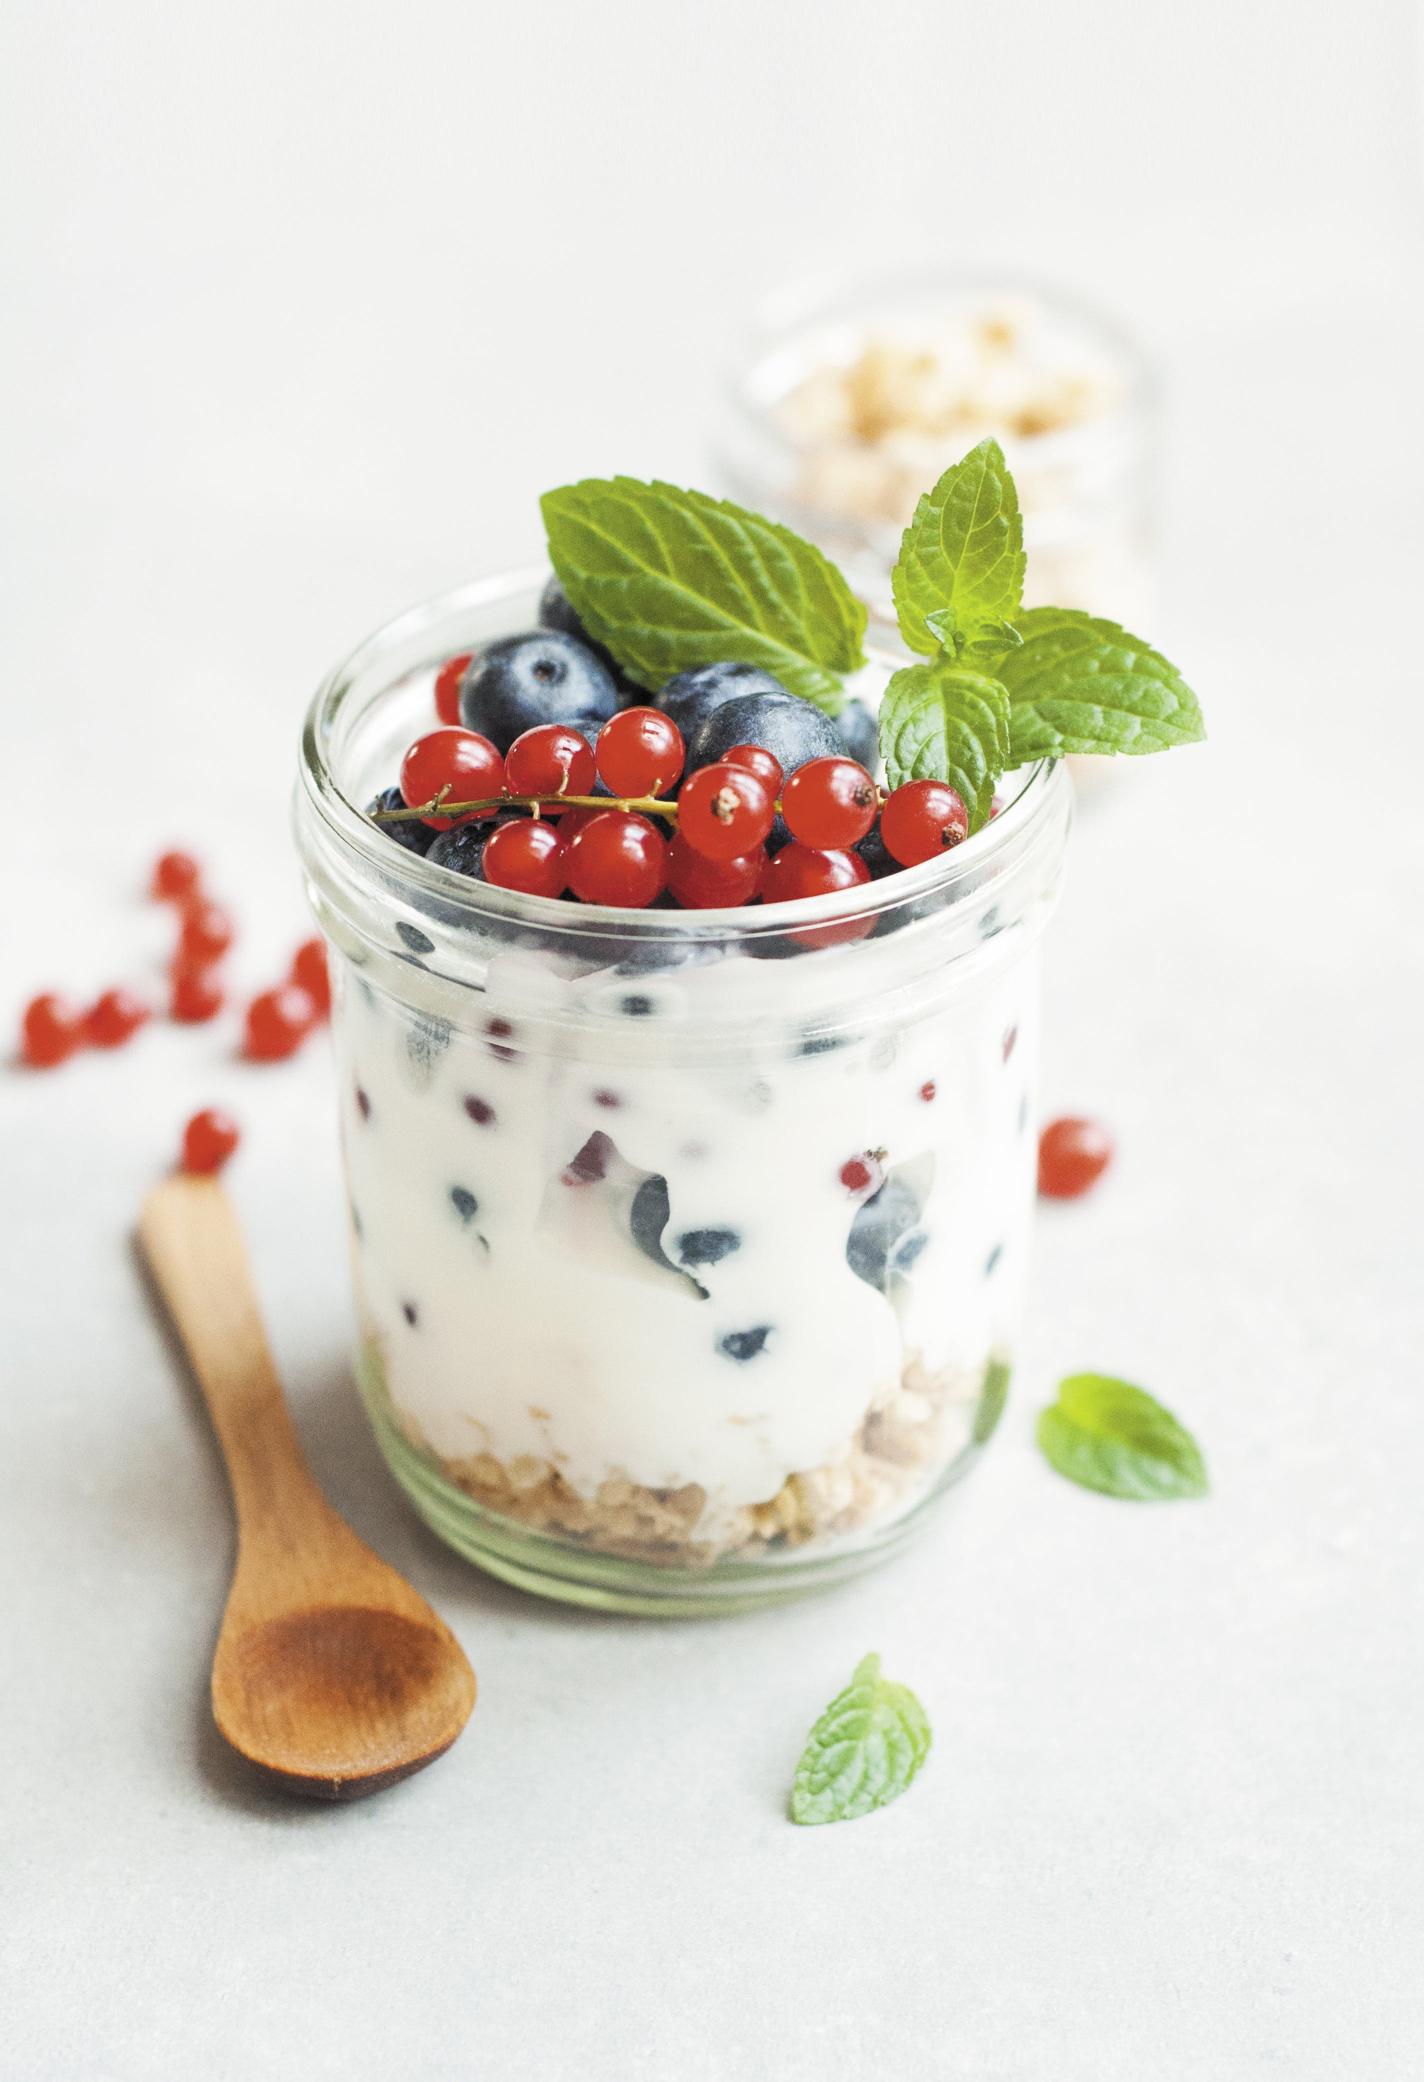 Yogurt come fonte di probiotici per la salute intestinale dei bambini